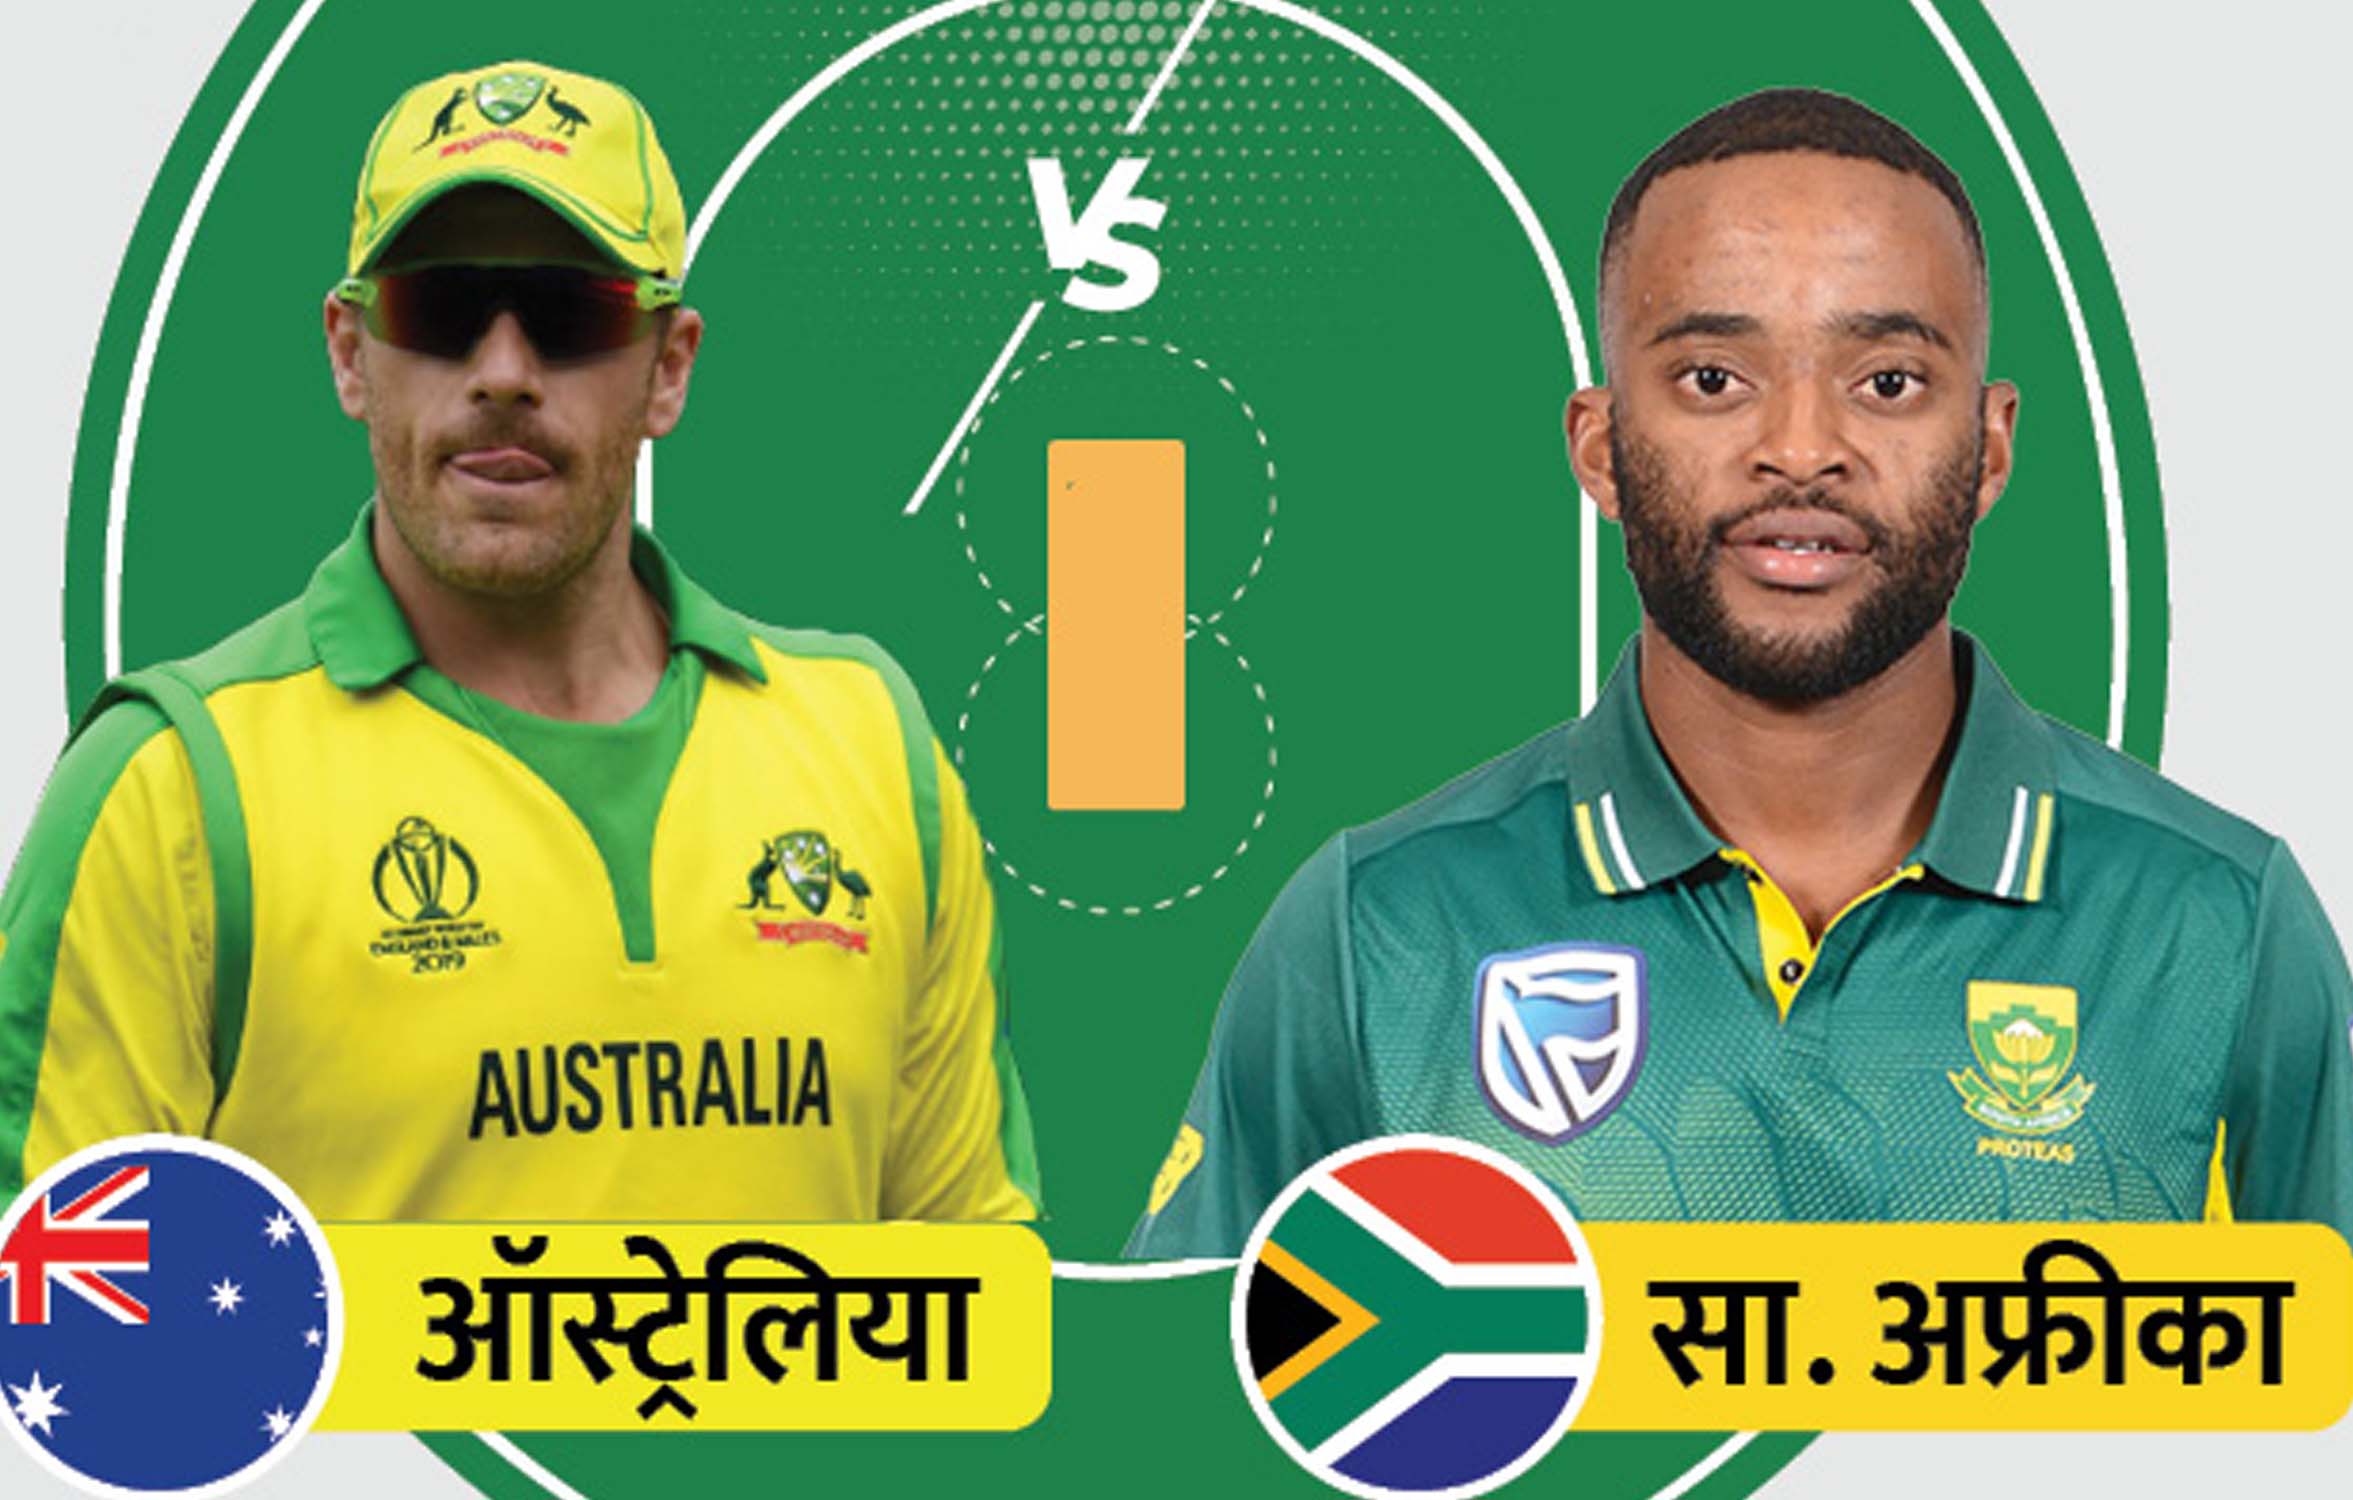 द. अफ्रीका के खिलाफ ऑस्ट्रेलियाई टीम 4 स्पेशलिस्ट बॉलर के साथ मैदान पर उतरेगी